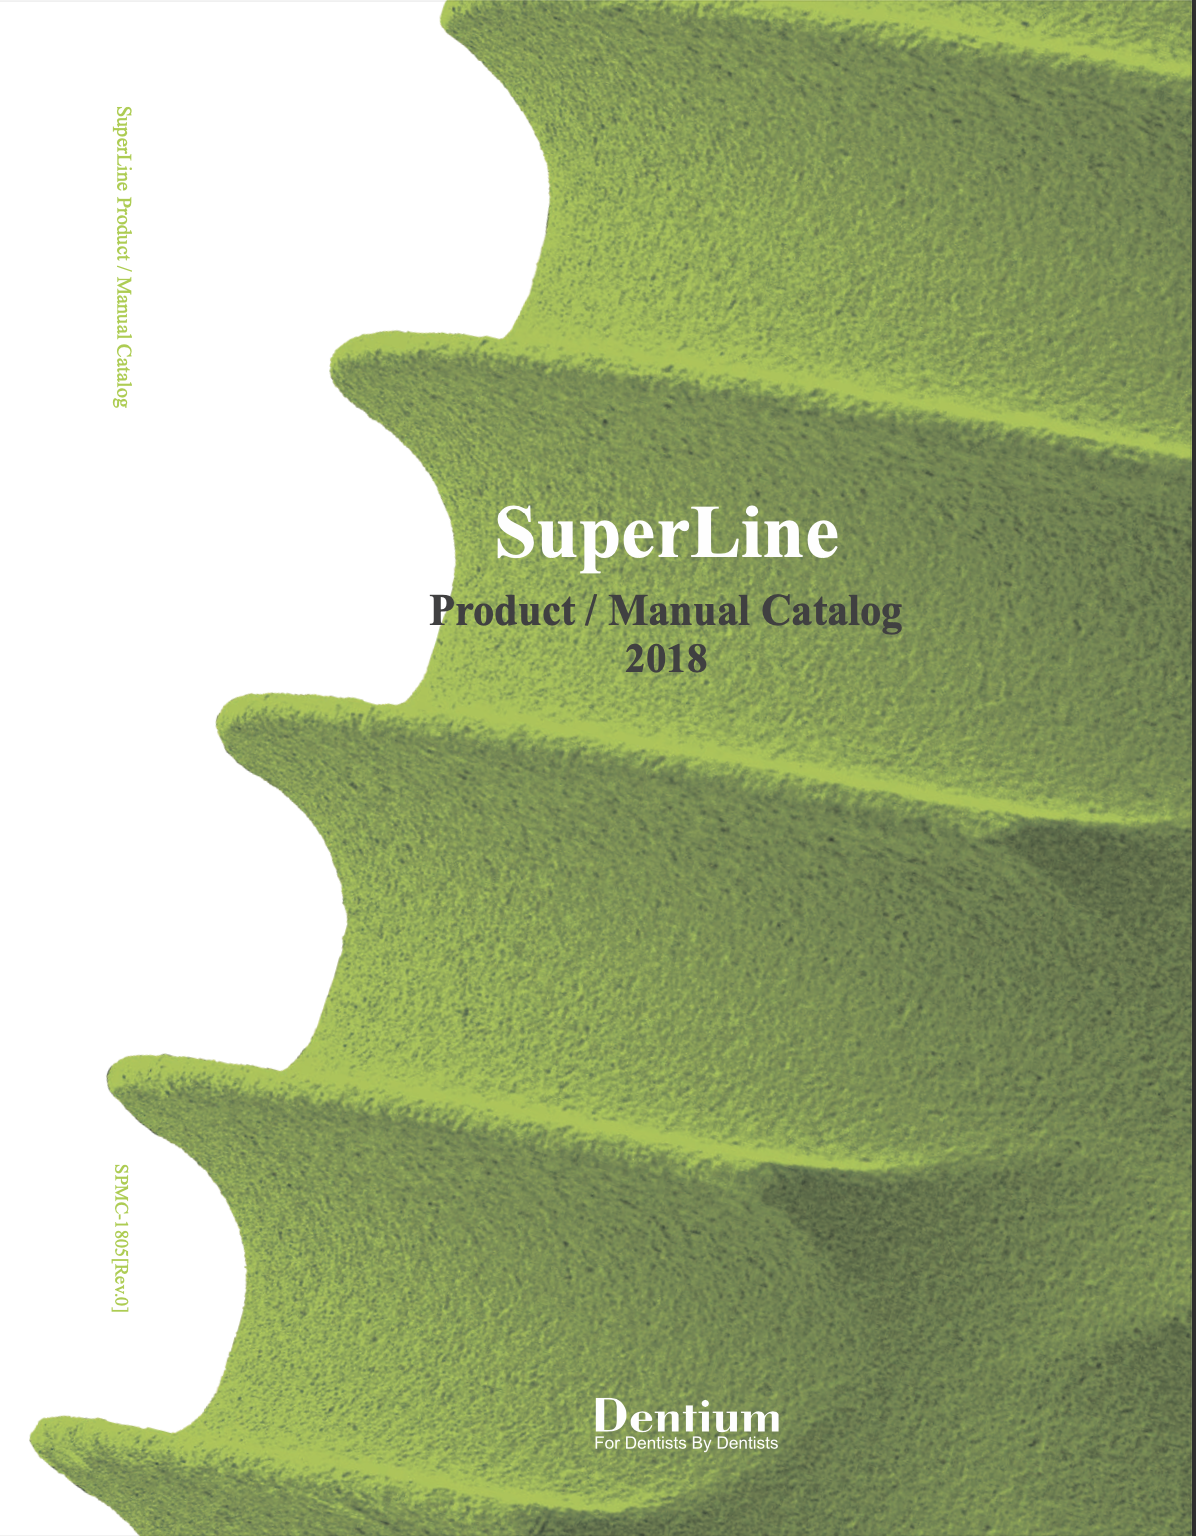 SuperLine Dentium Catalogue